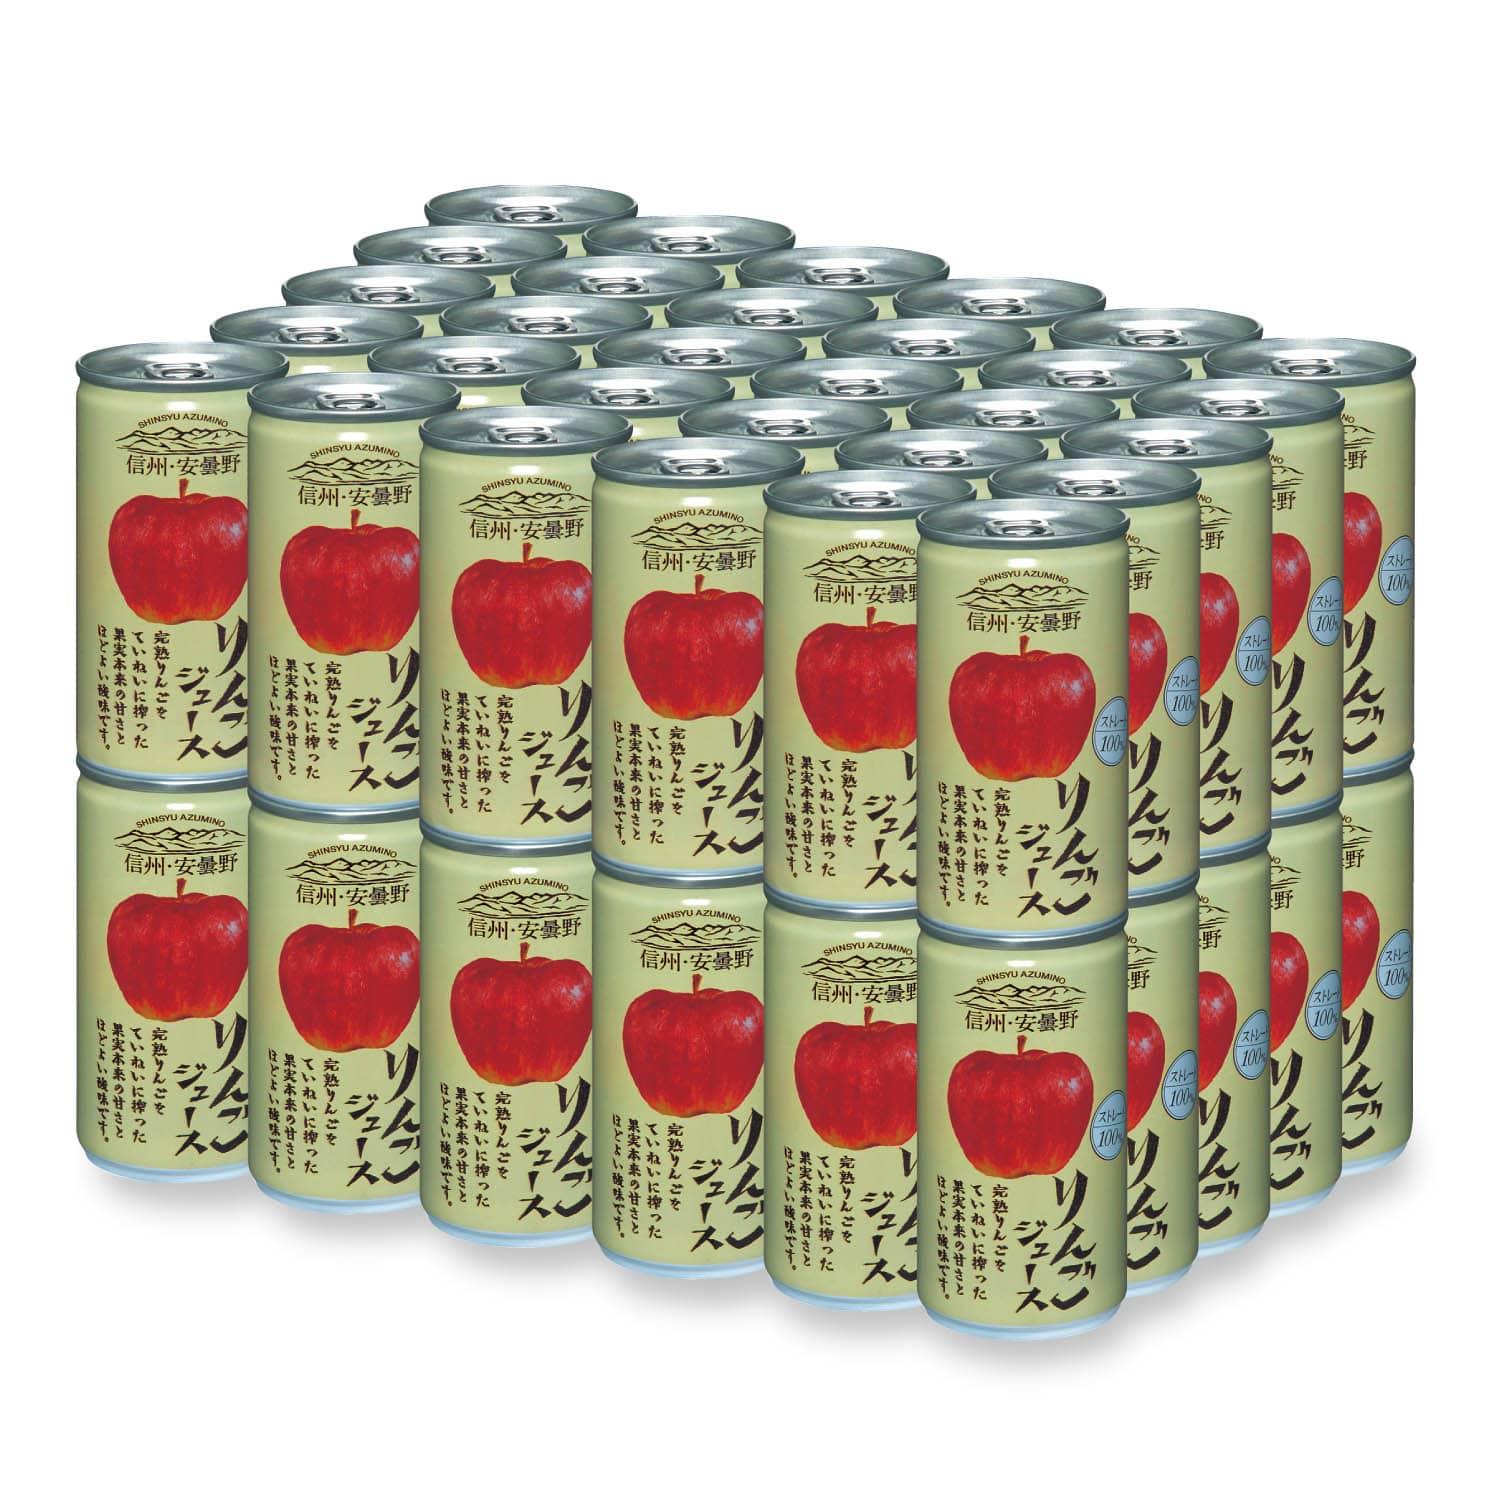 【防災】グルメ 食品 ベルメゾン 信州・安曇野りんごジュース 190g×60缶